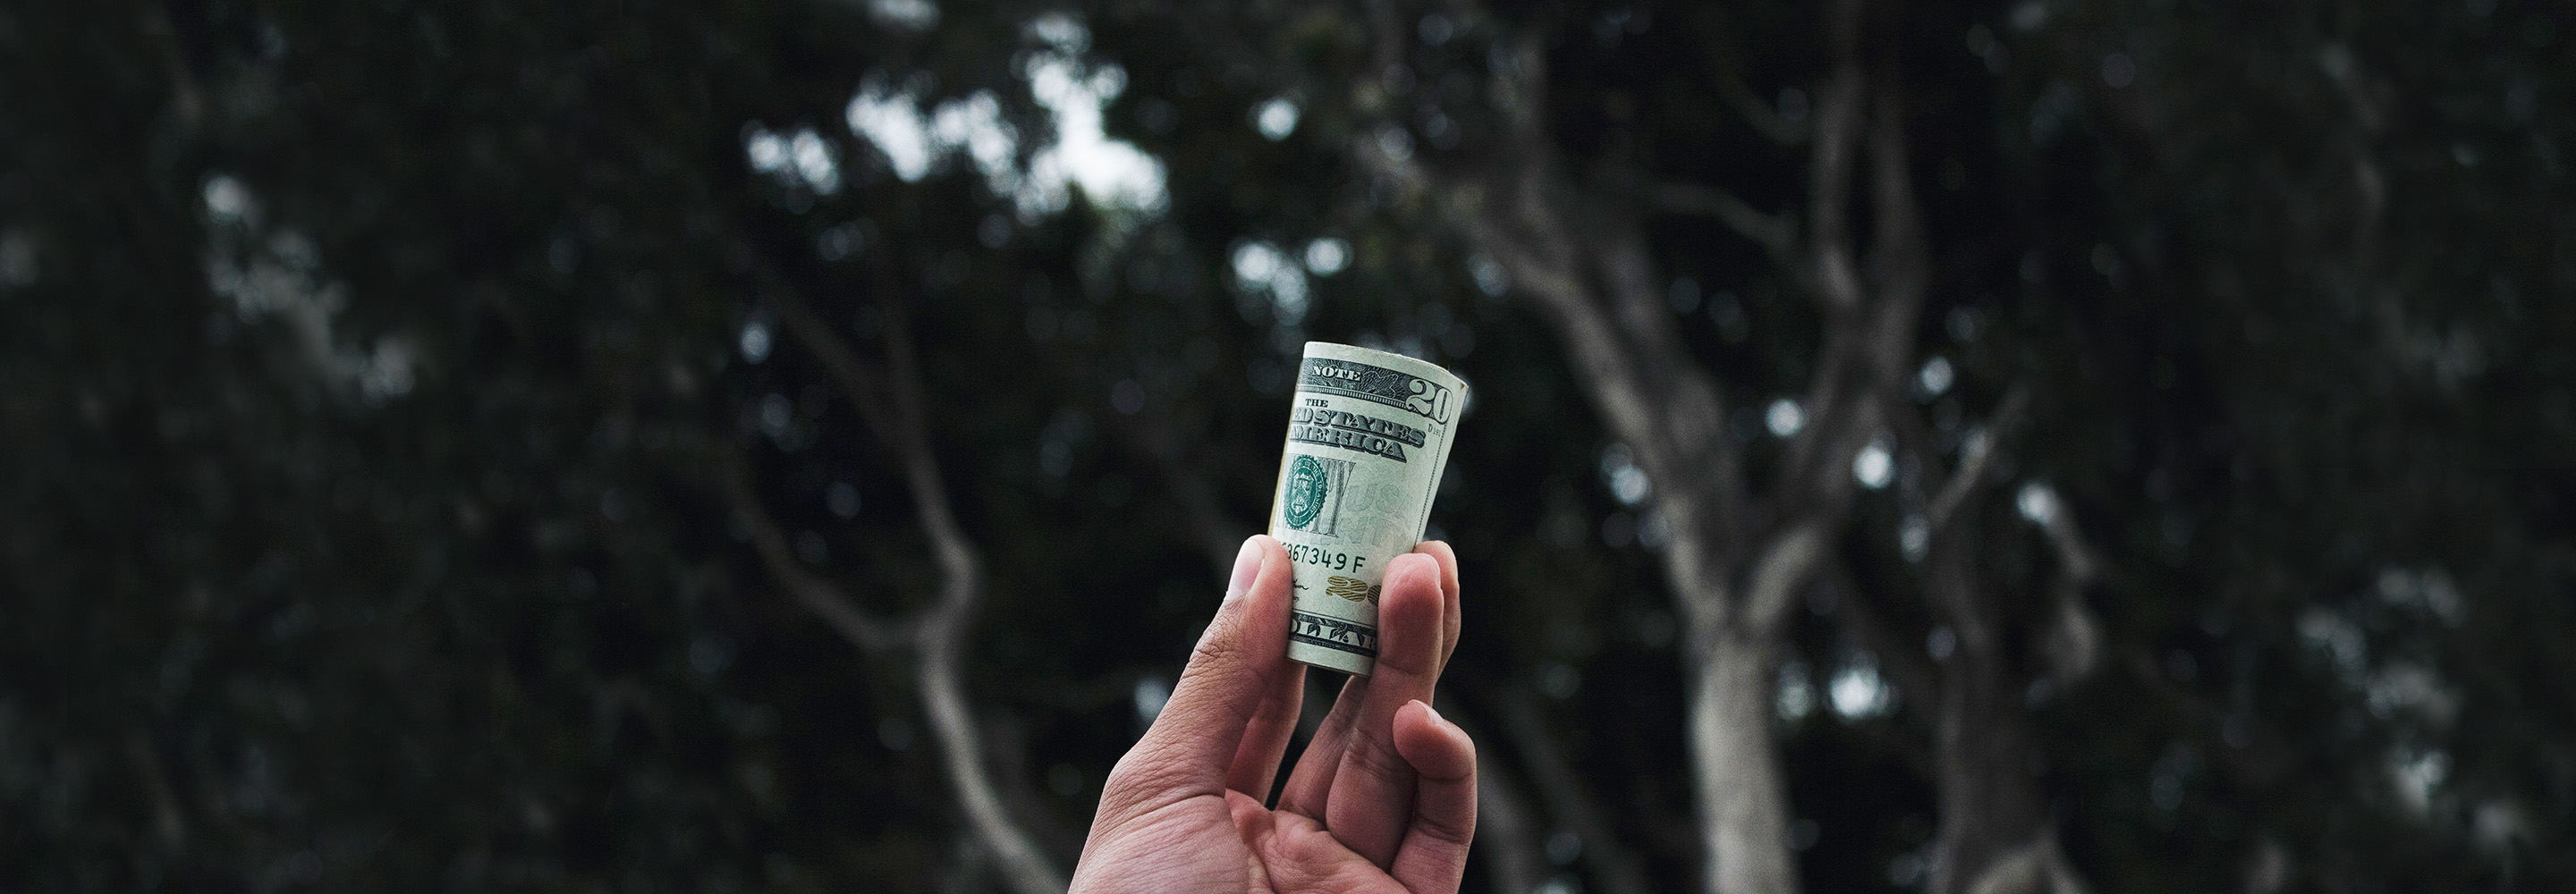 25 лучших способов заработать деньги в интернете